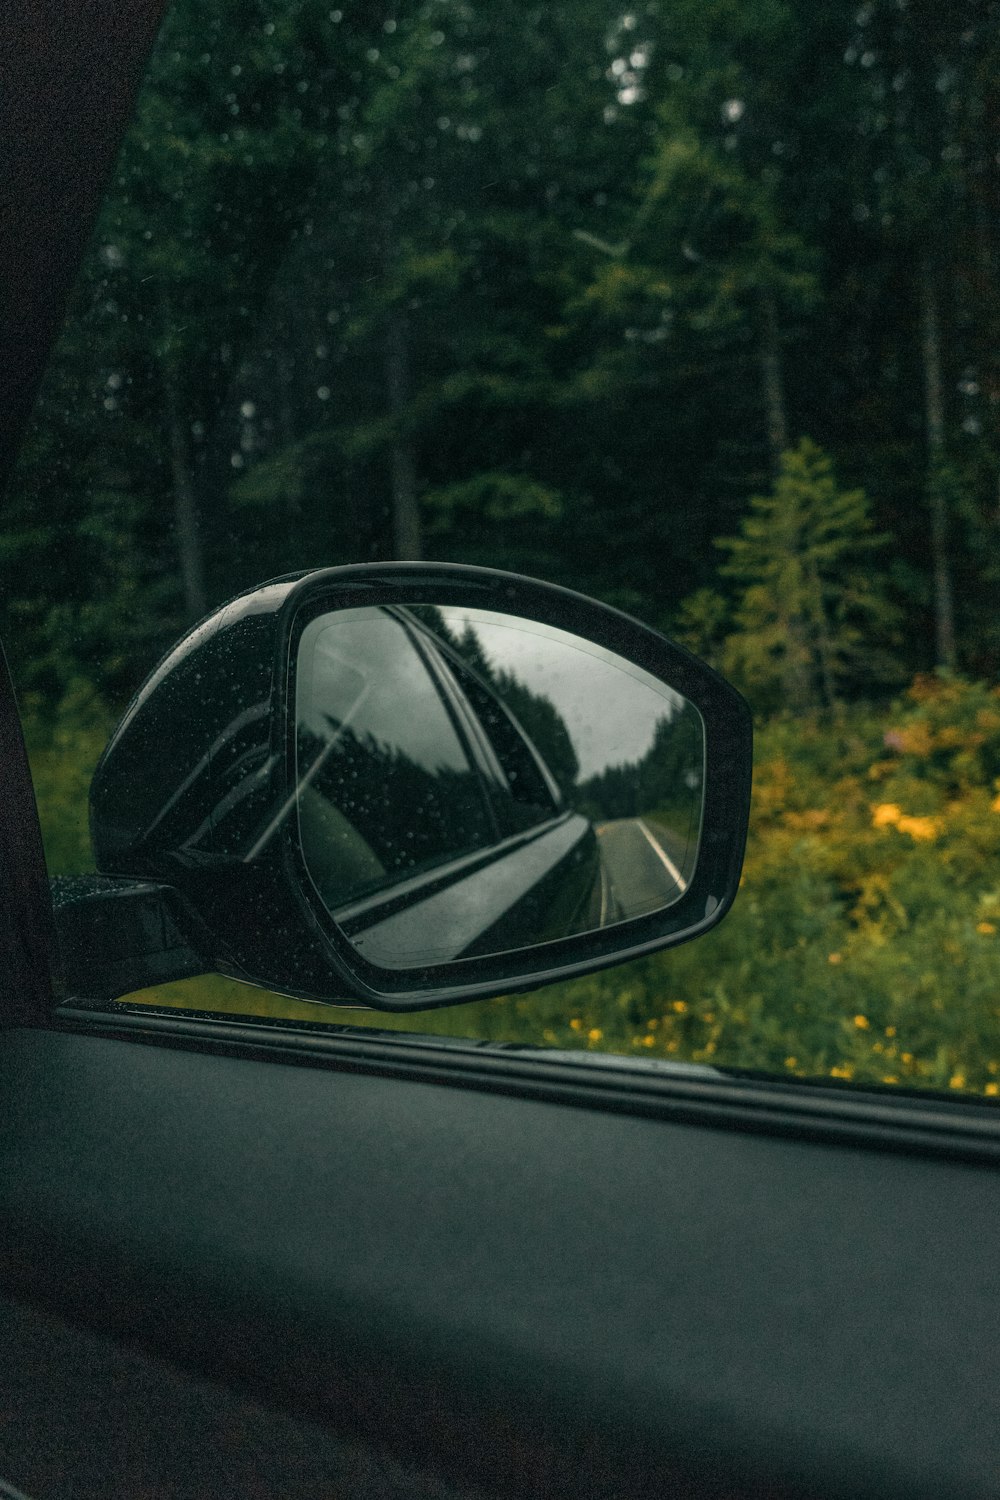 Espejo lateral del automóvil que refleja árboles verdes durante el día